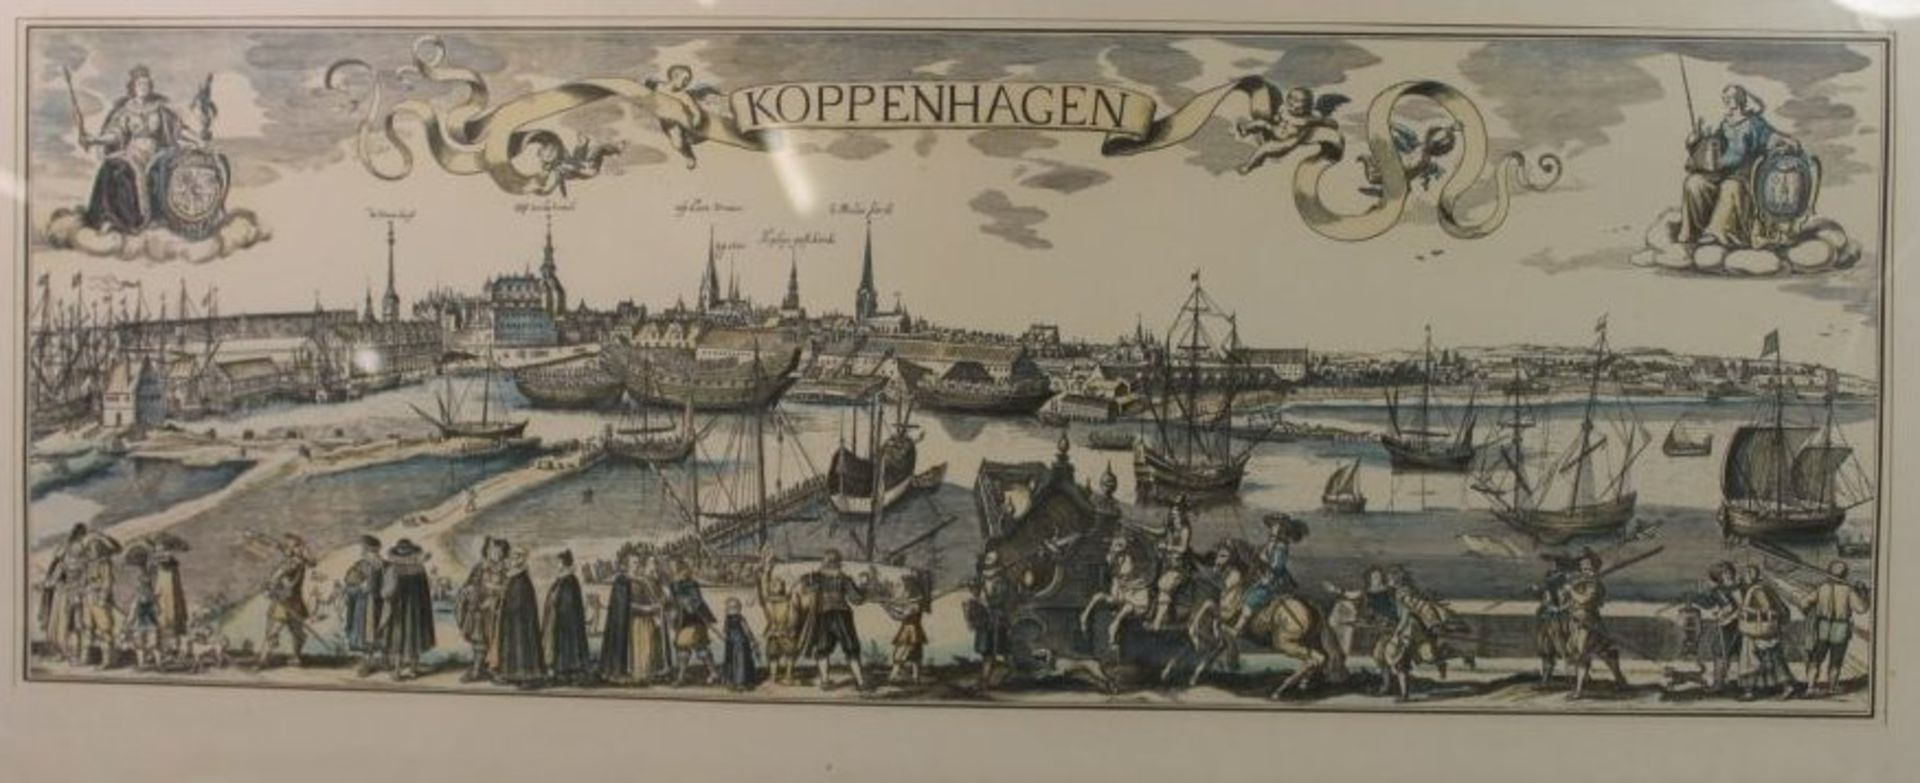 Ansichtengrafik "Kopenhagen", nach Merian, ger./Glas, RG 30 x 64cm.